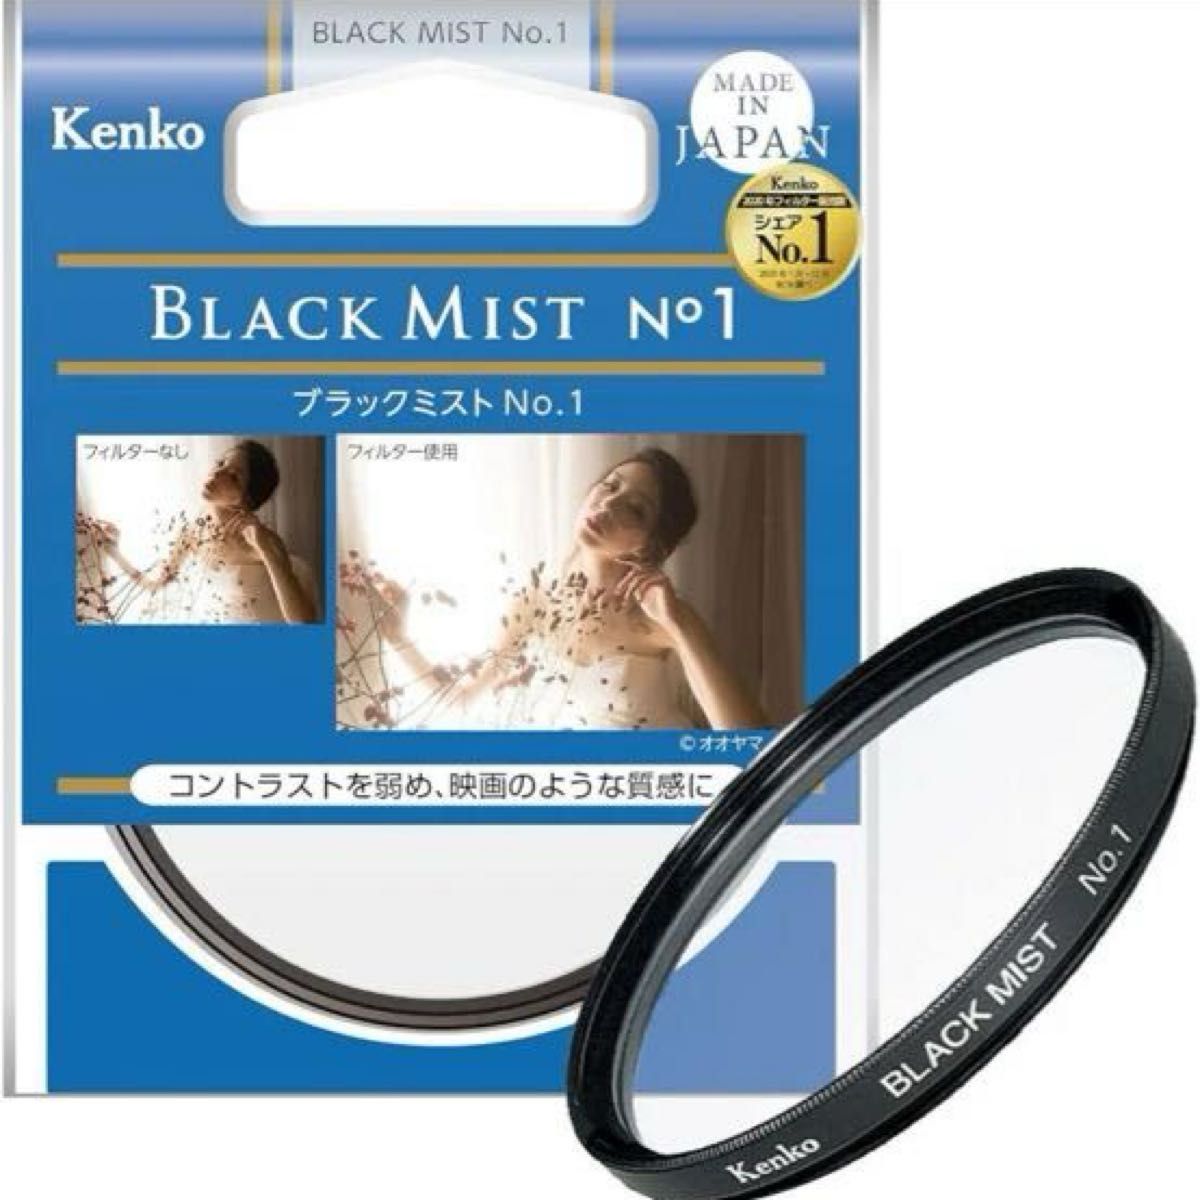 ブラックミスト(BLACK MIST) Kenko